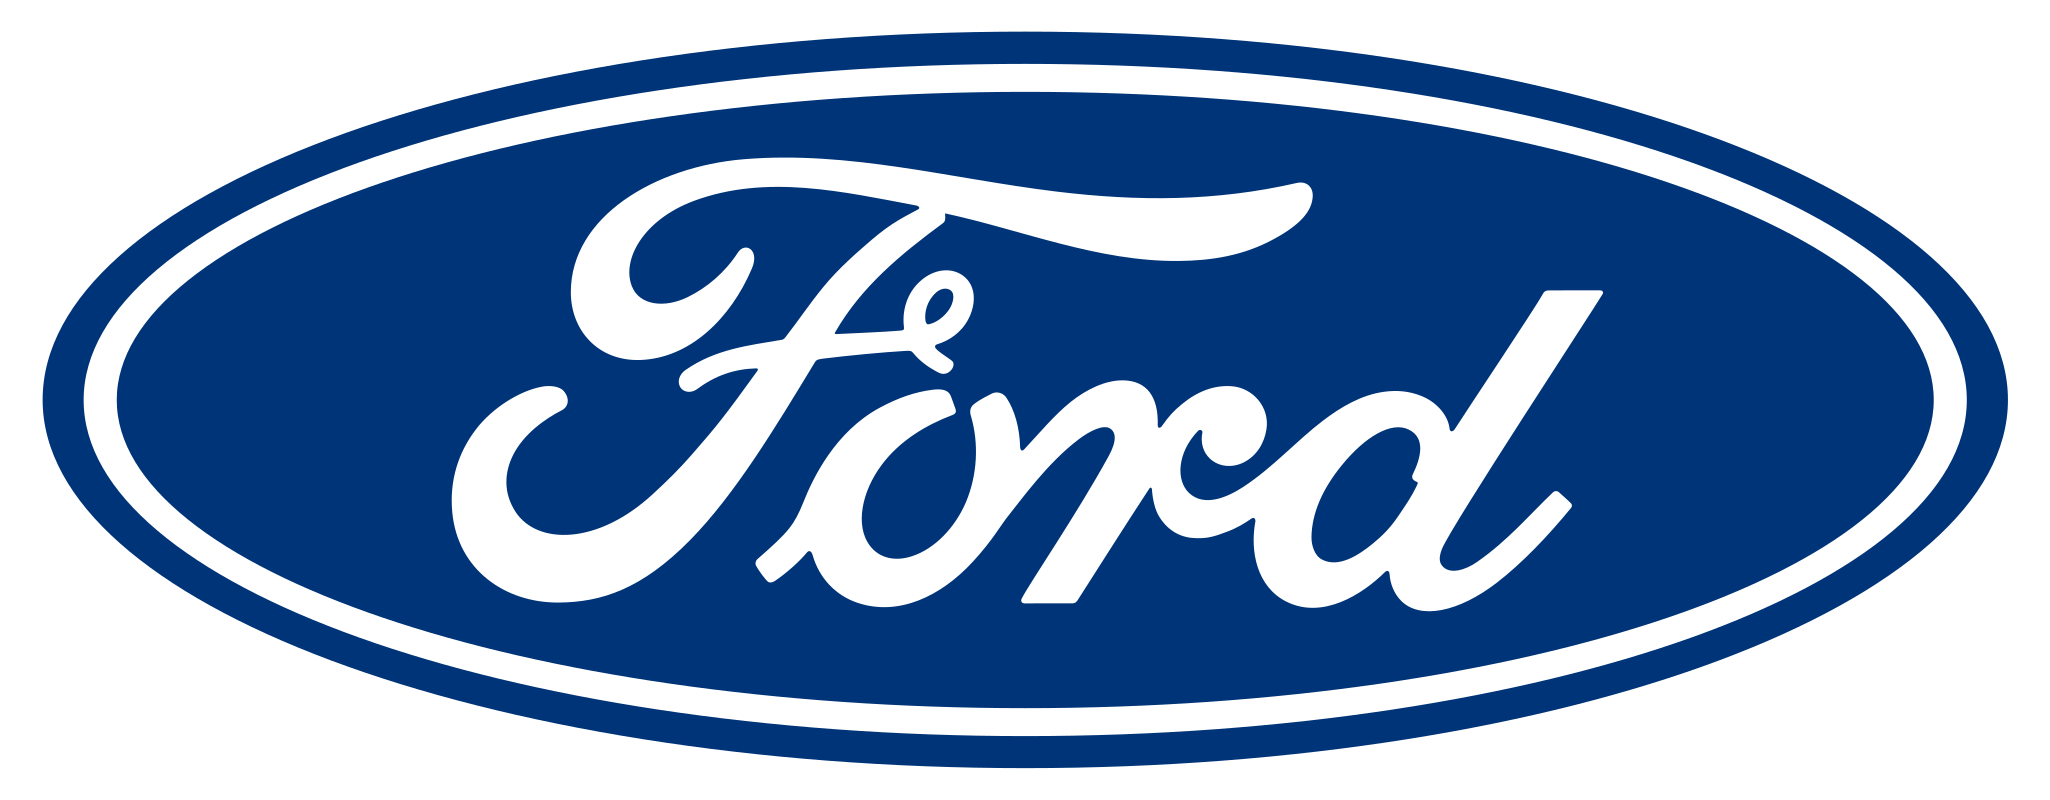 Acheter une Ford en Saône et Loire et dans l'Ain